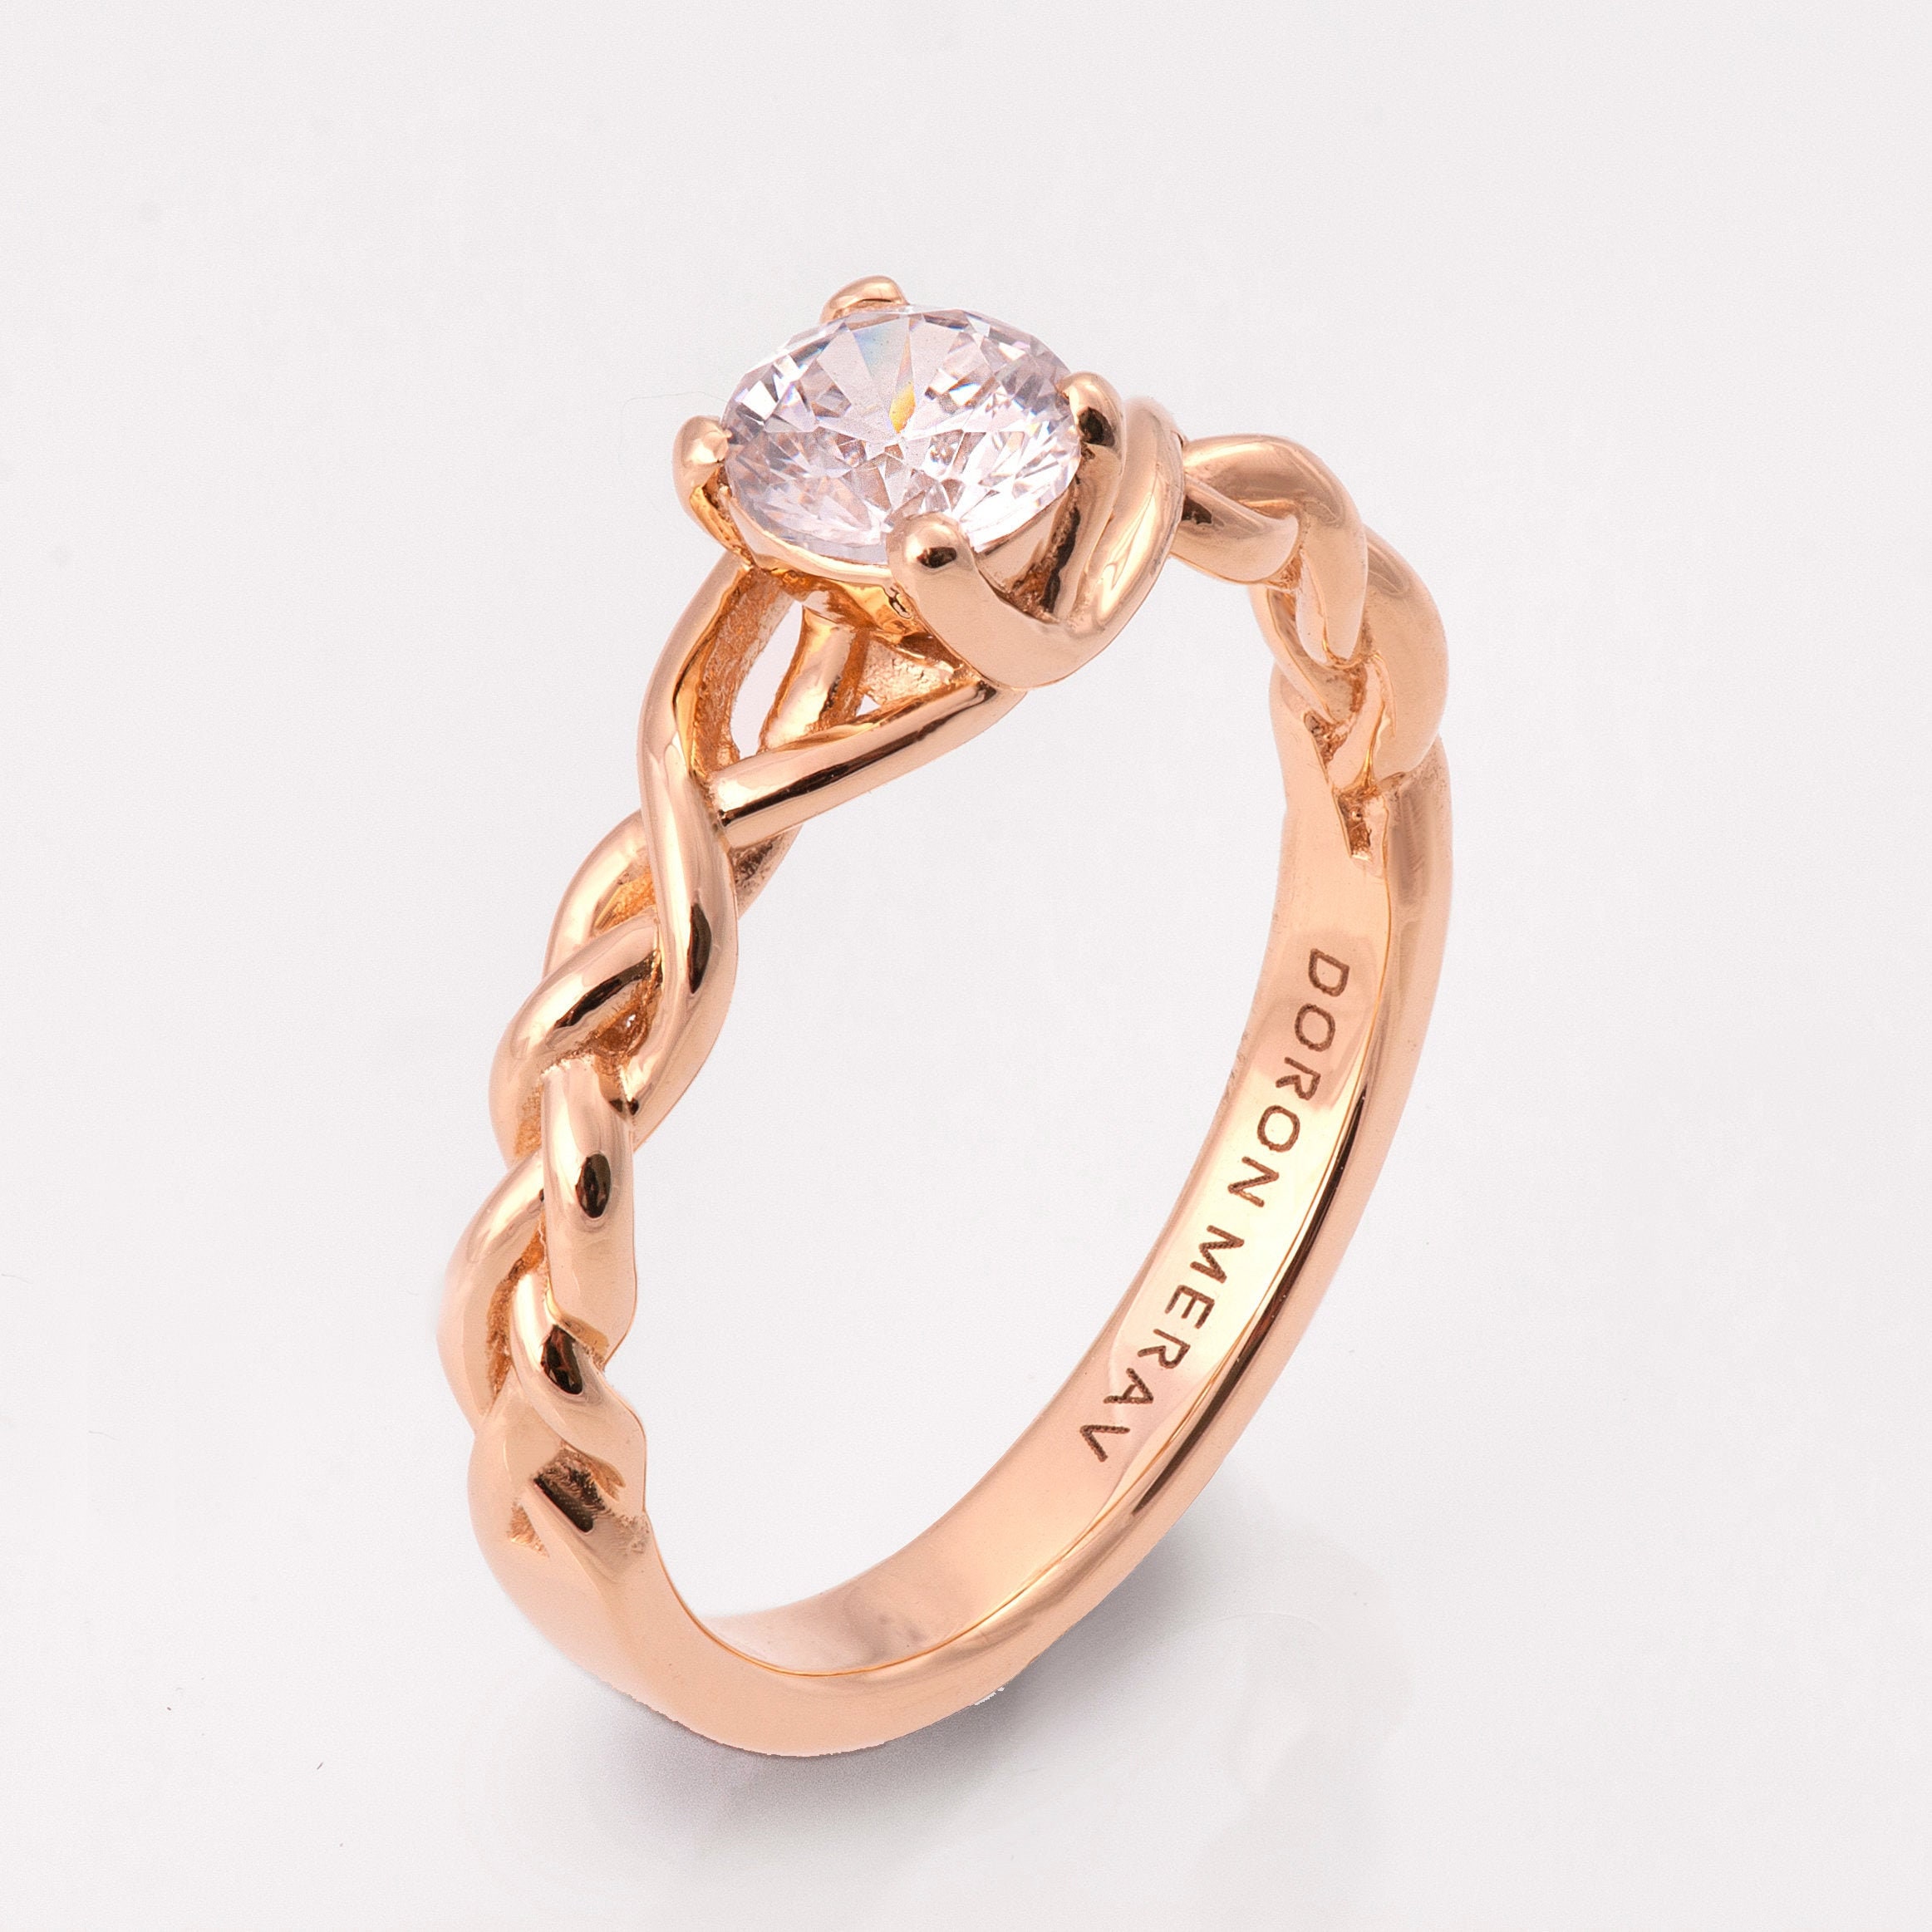 Modern 18 Karat Rose Gold Chiseled Braided Wedding Ring Size 5.5 | Chairish